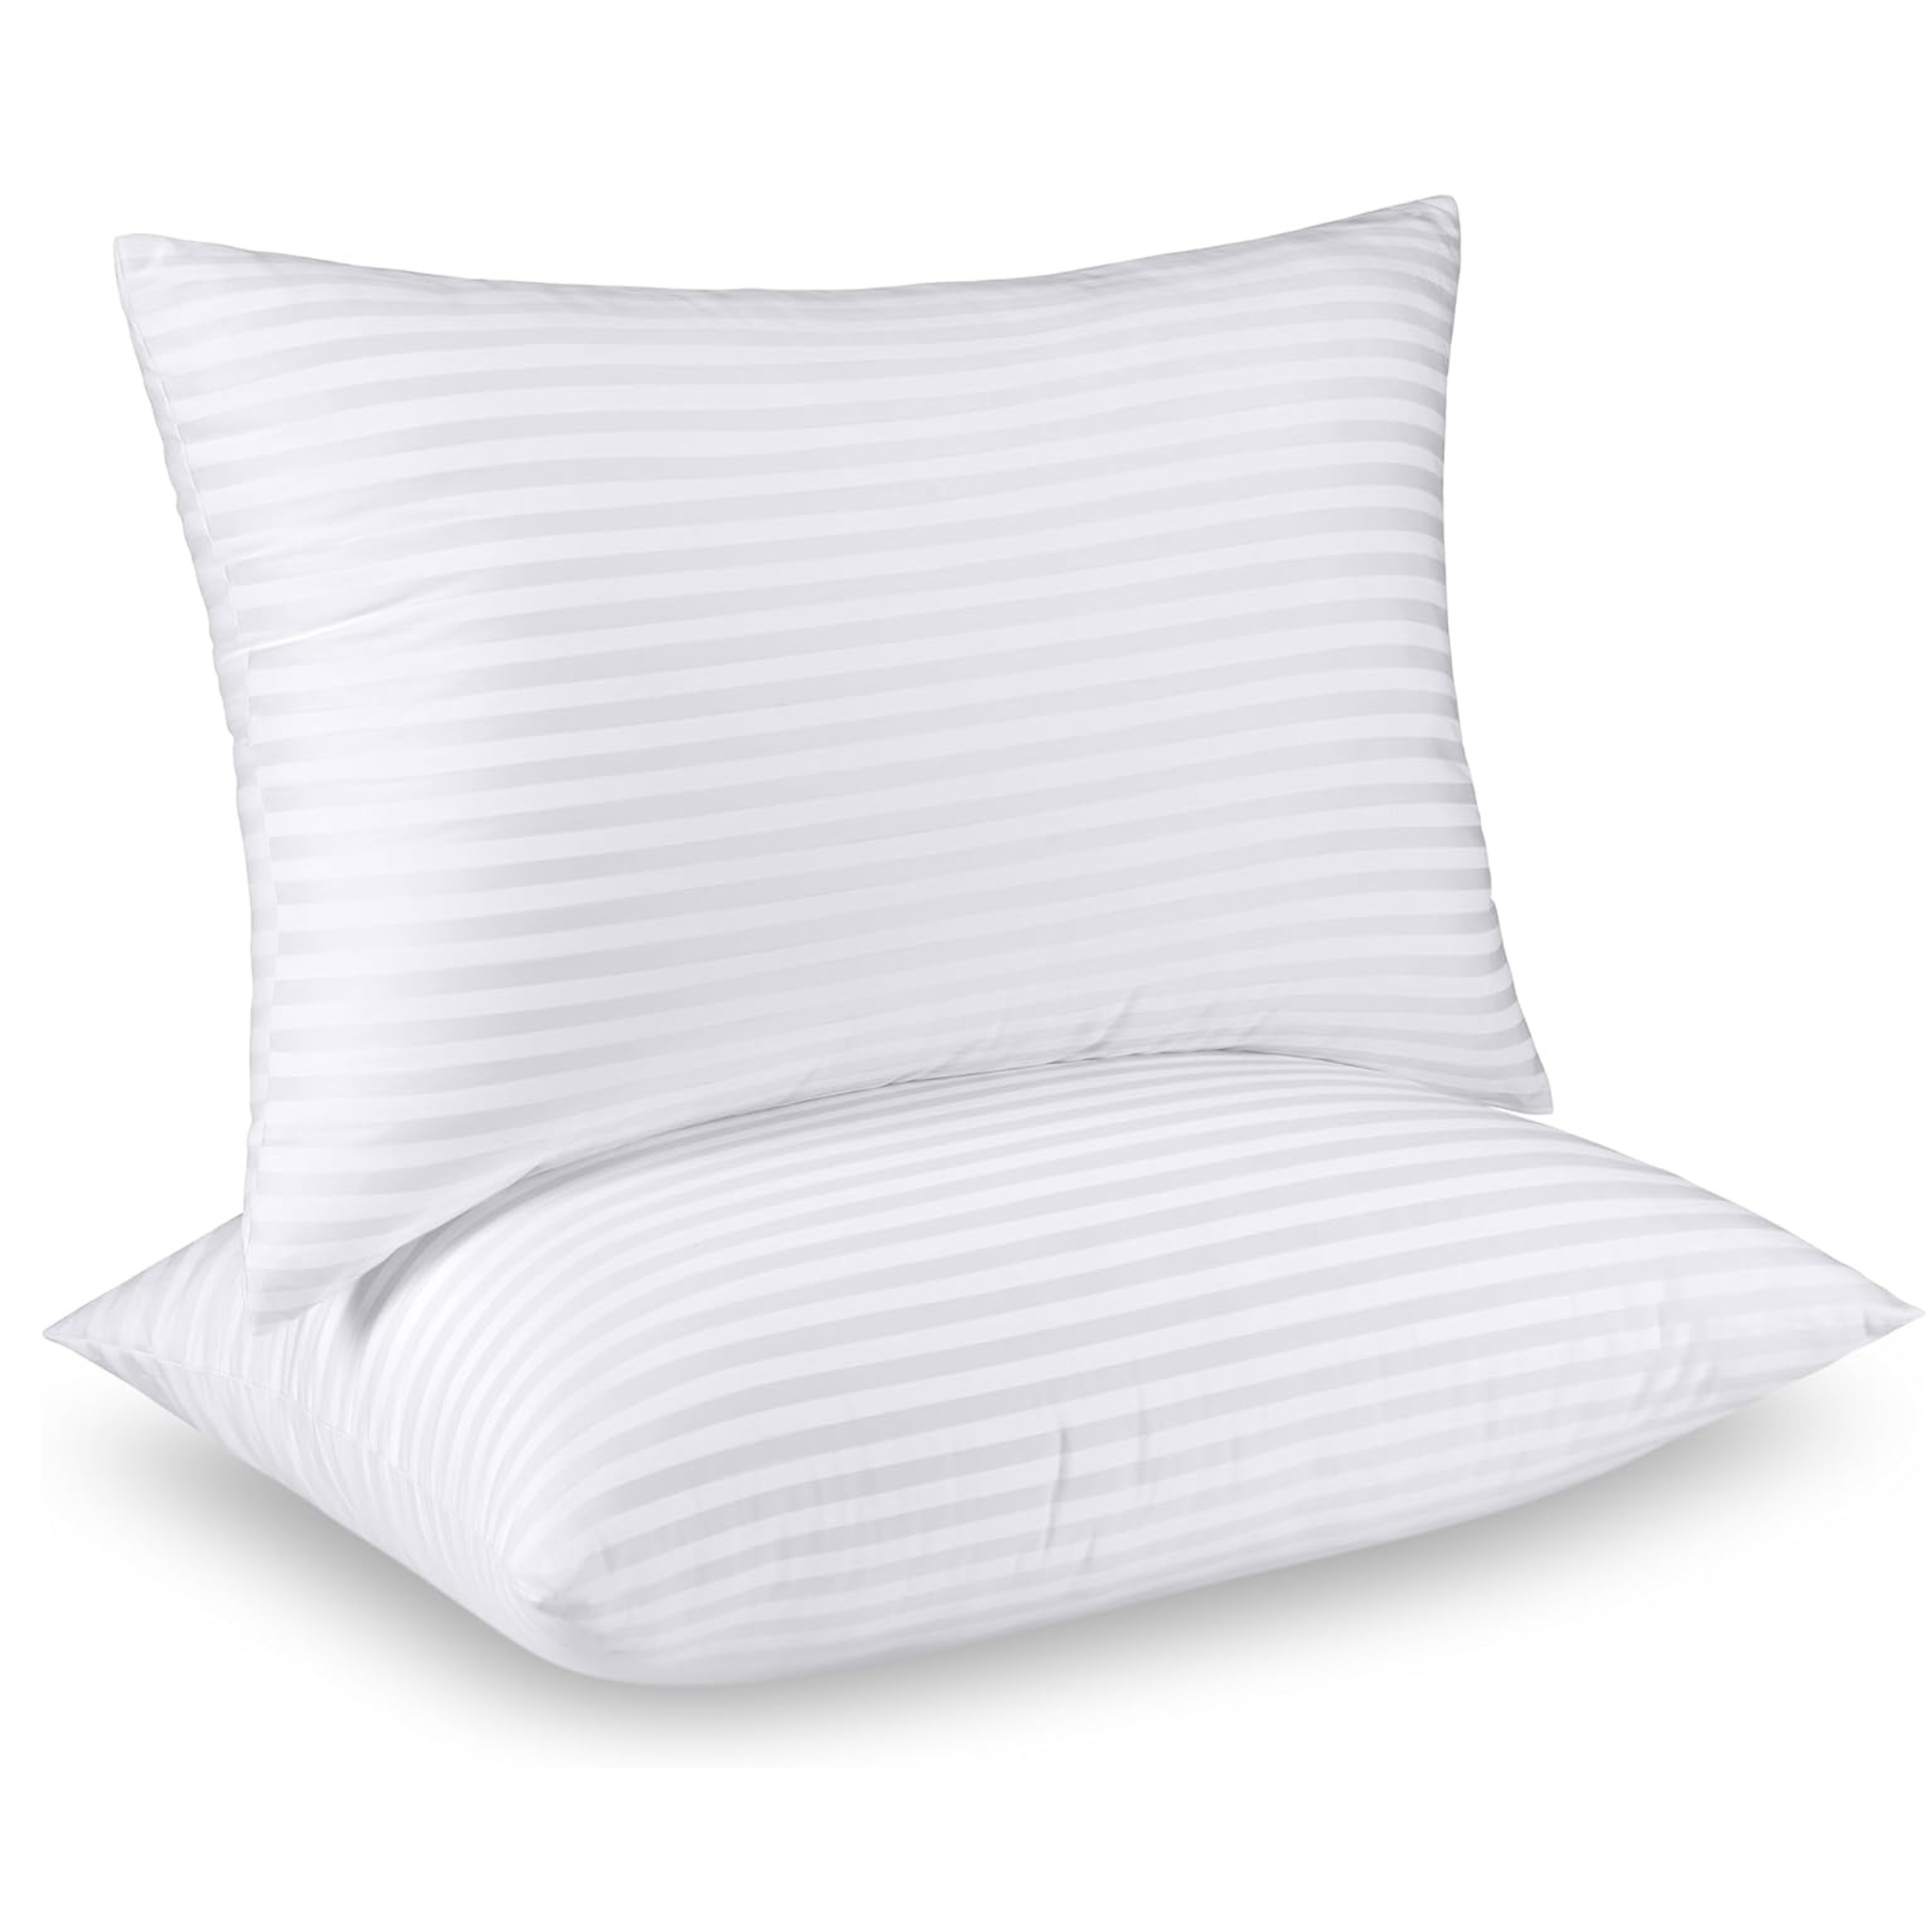 Set of 2 Utopia Bedding Pillows Queen Size